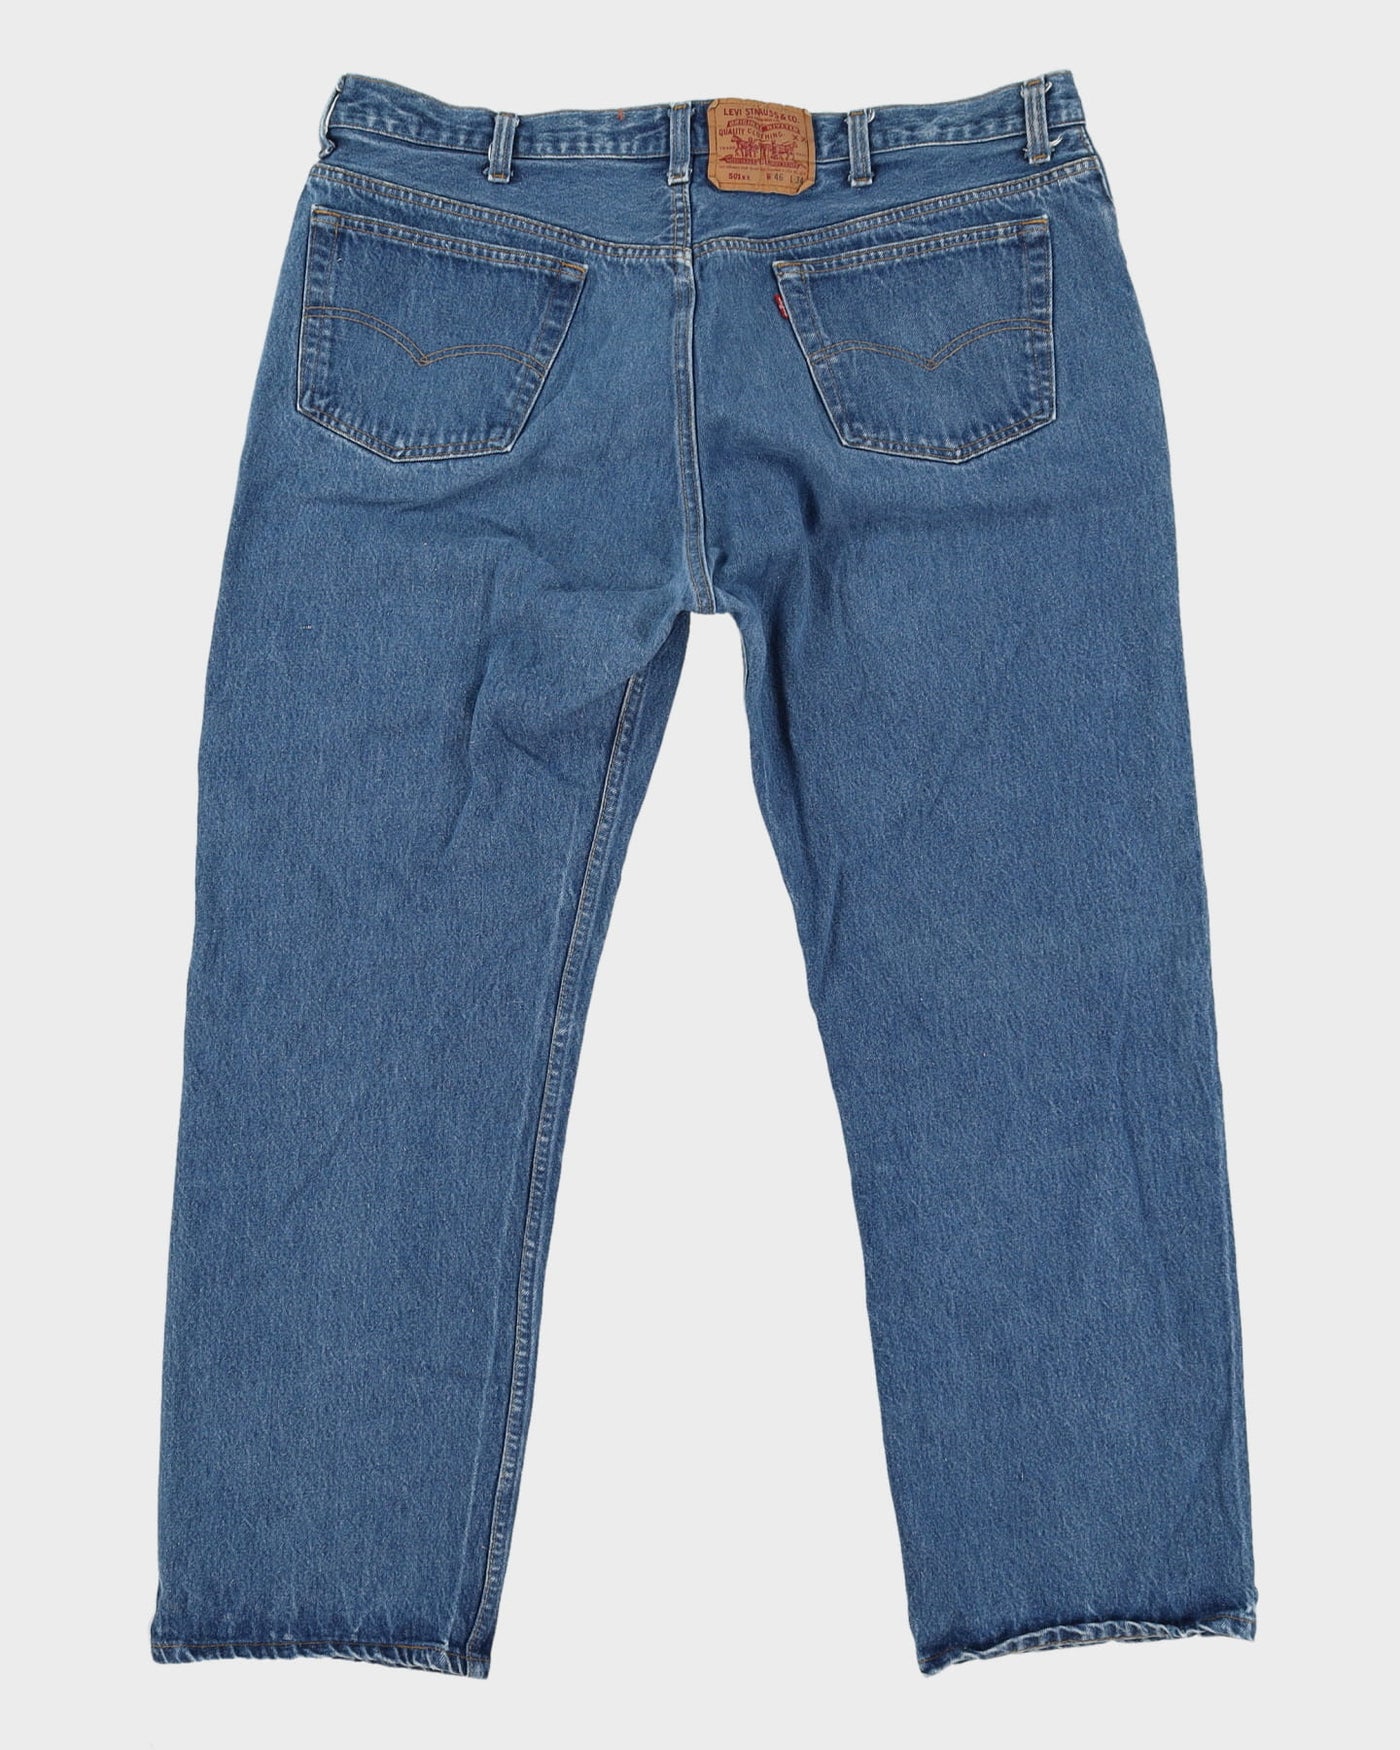 Vintage 80s Levi's 501 Medium Wash Jeans - W42 L31